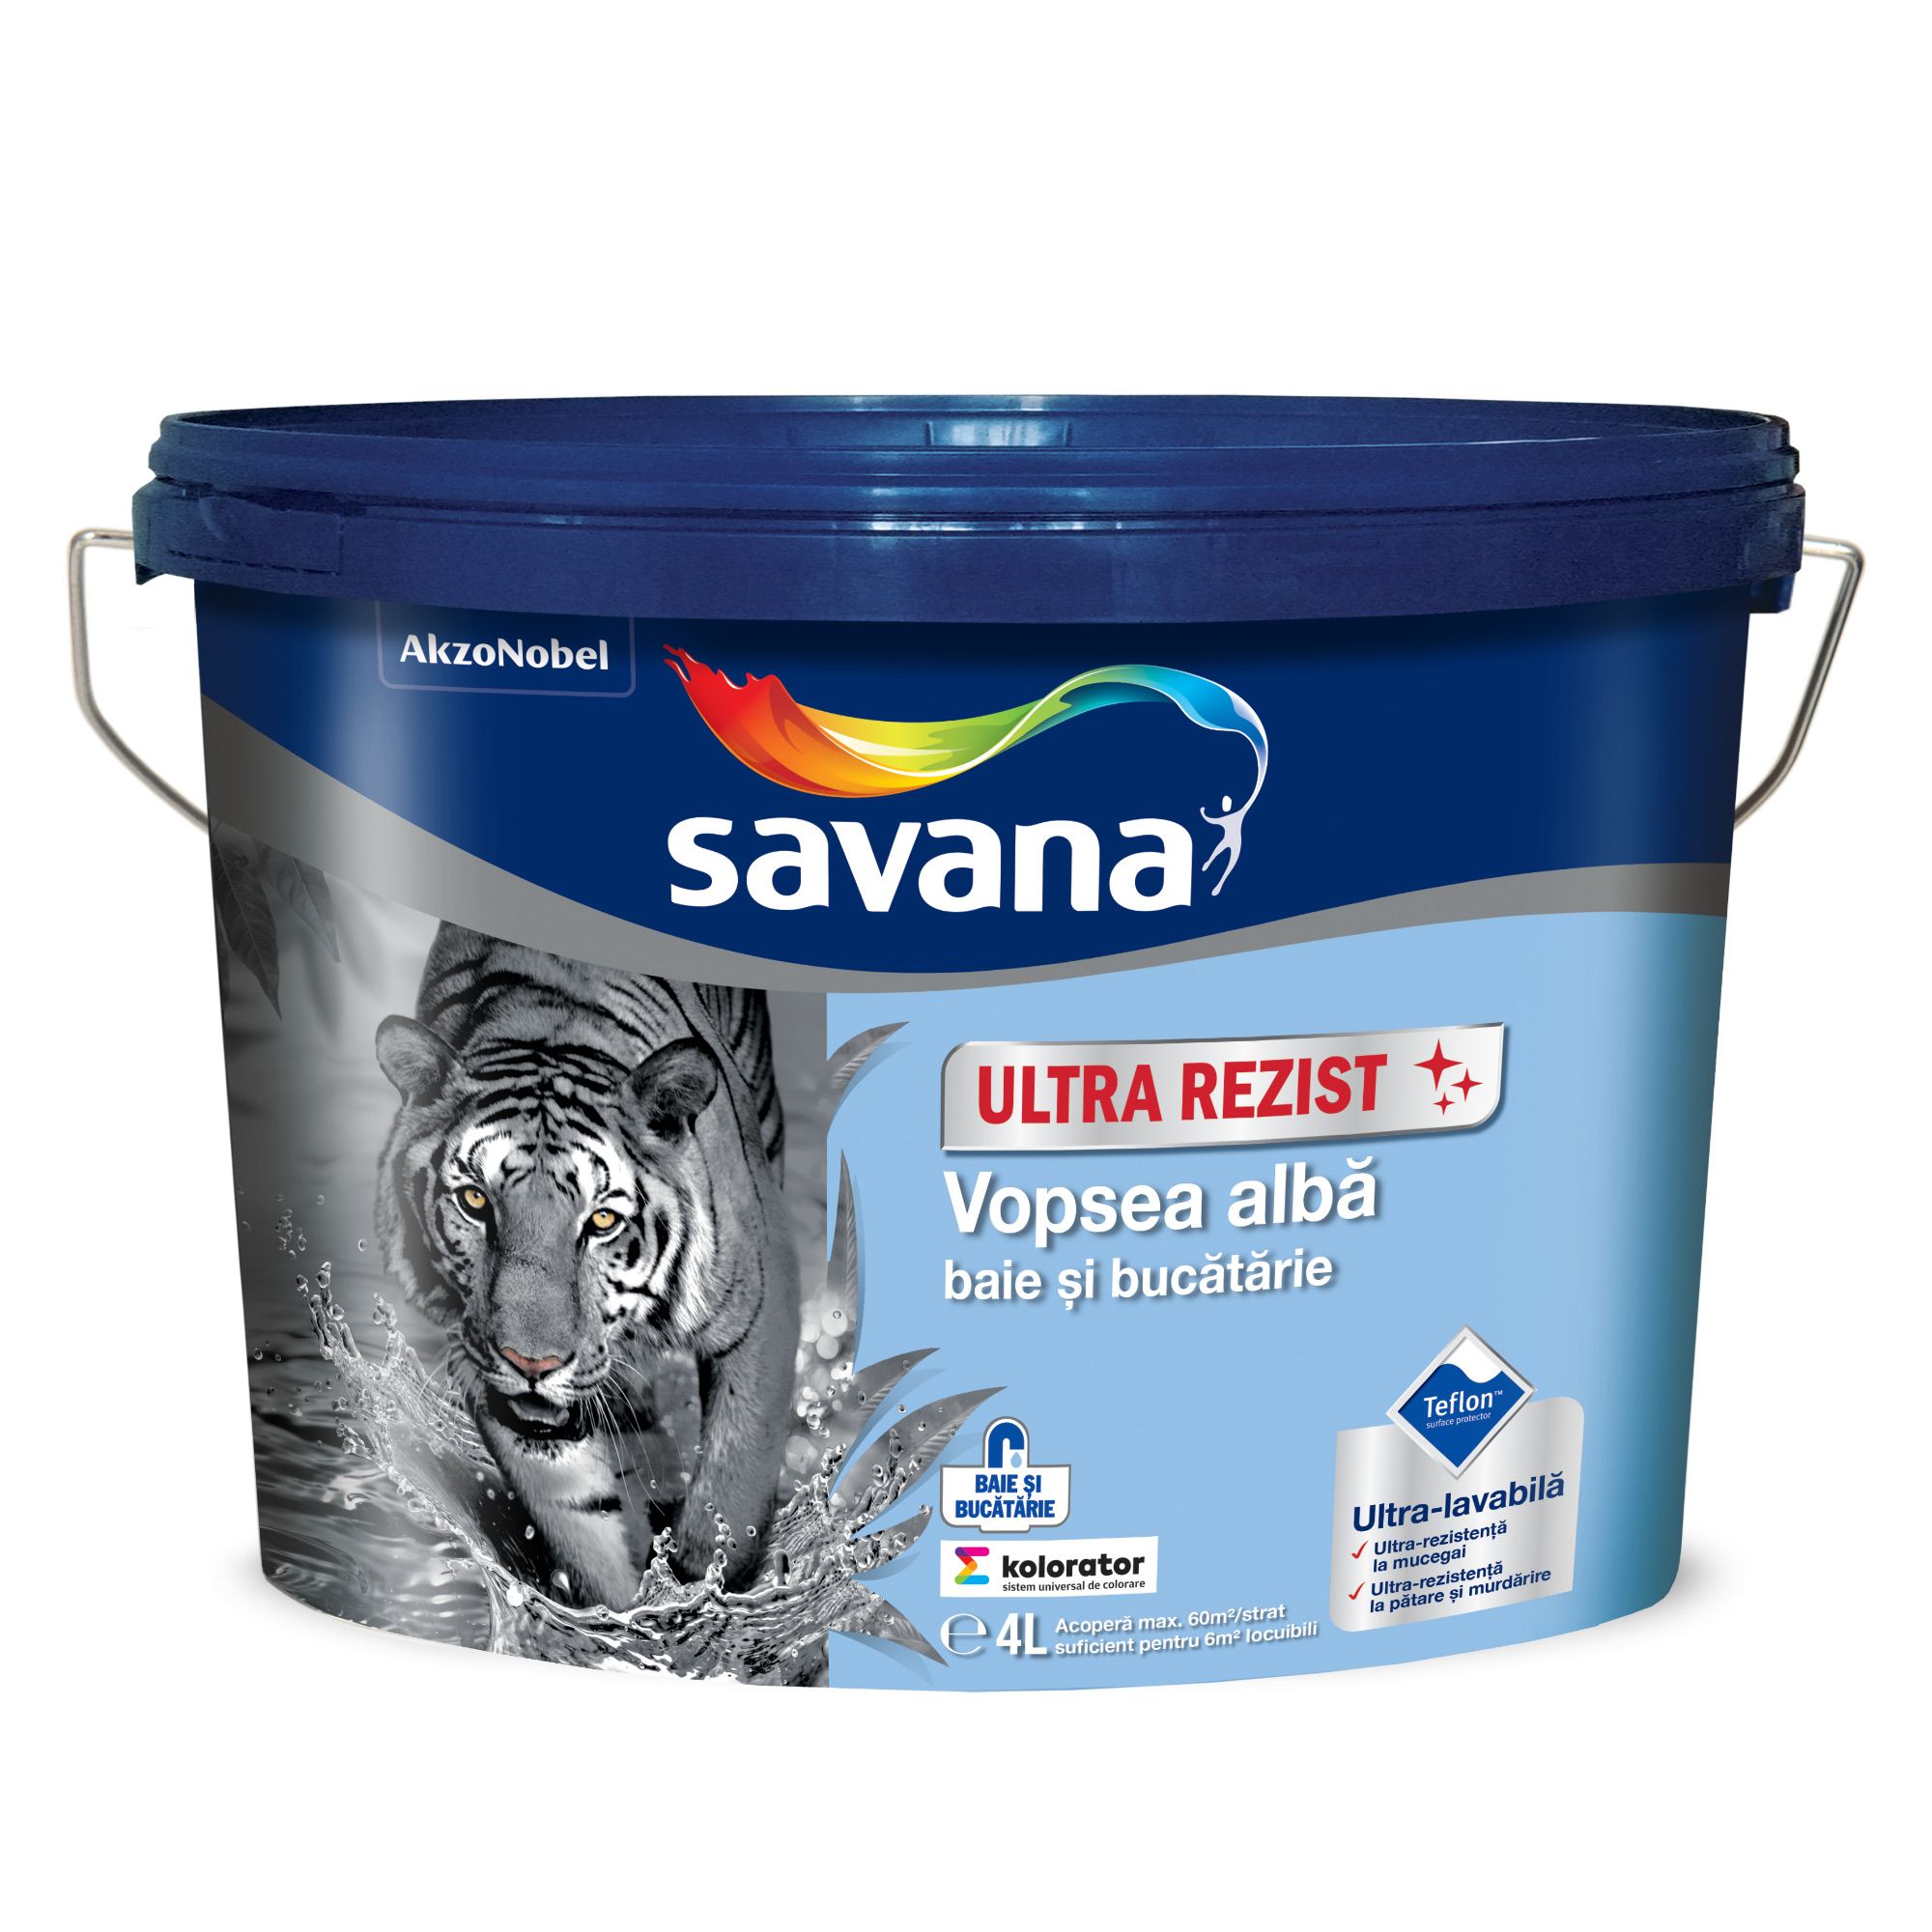 Vopseluri - Vopsea lavabila alba cu Teflon pentru baie si bucatarie Savana UltraRezist 4L, maxbau.ro